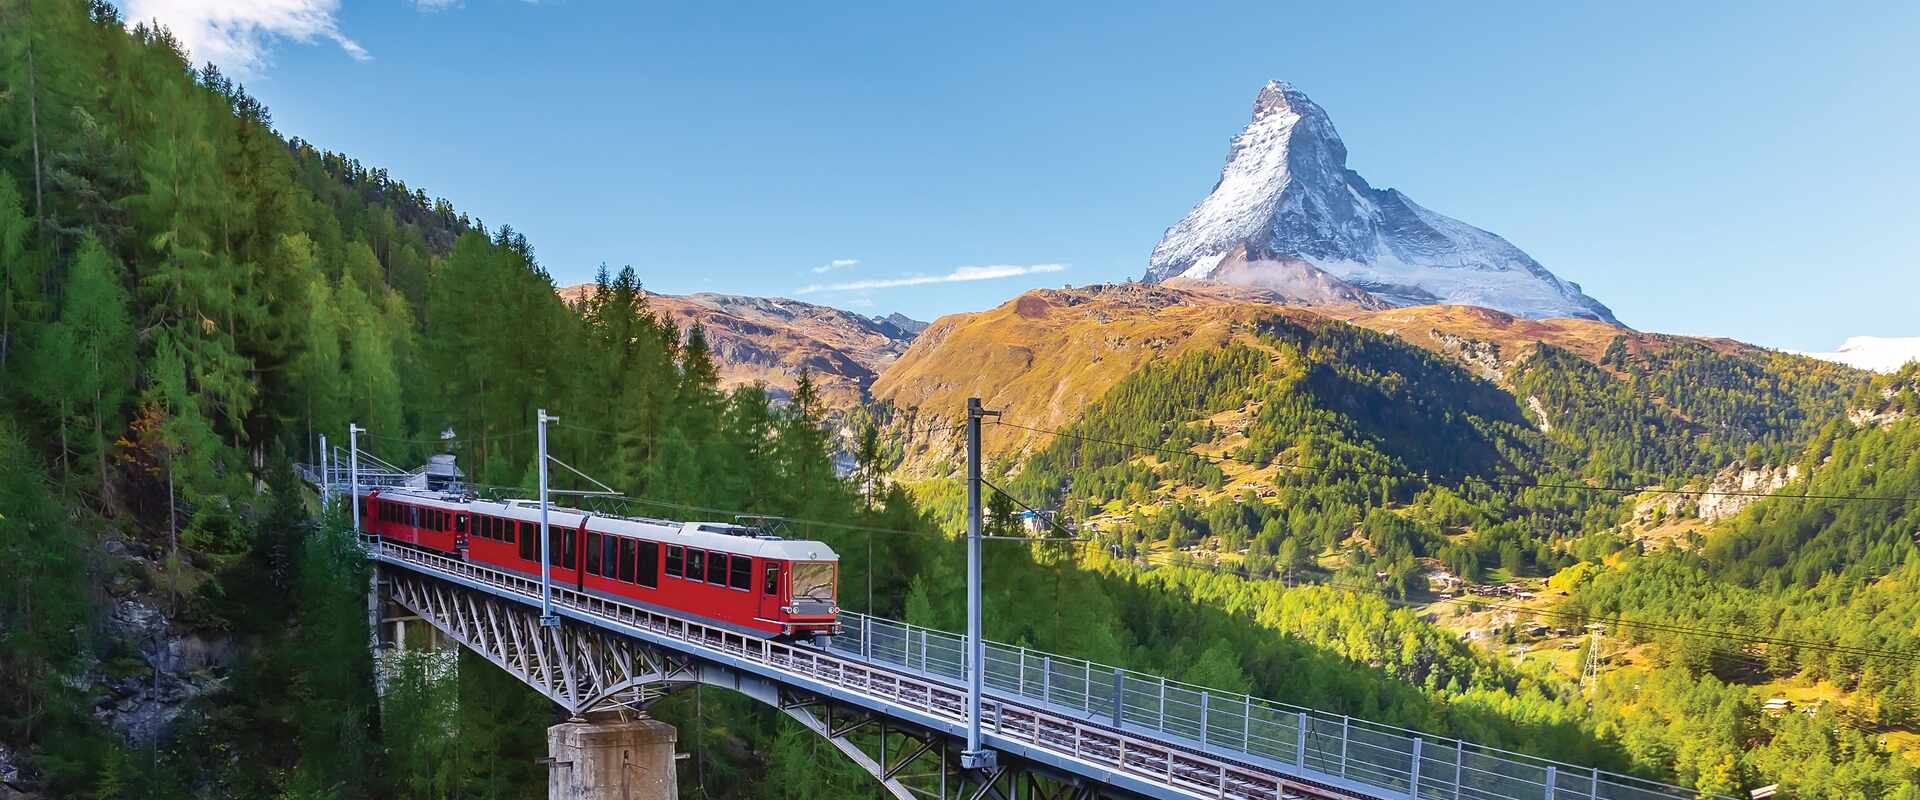 Gornergrat Railway, Switzerland